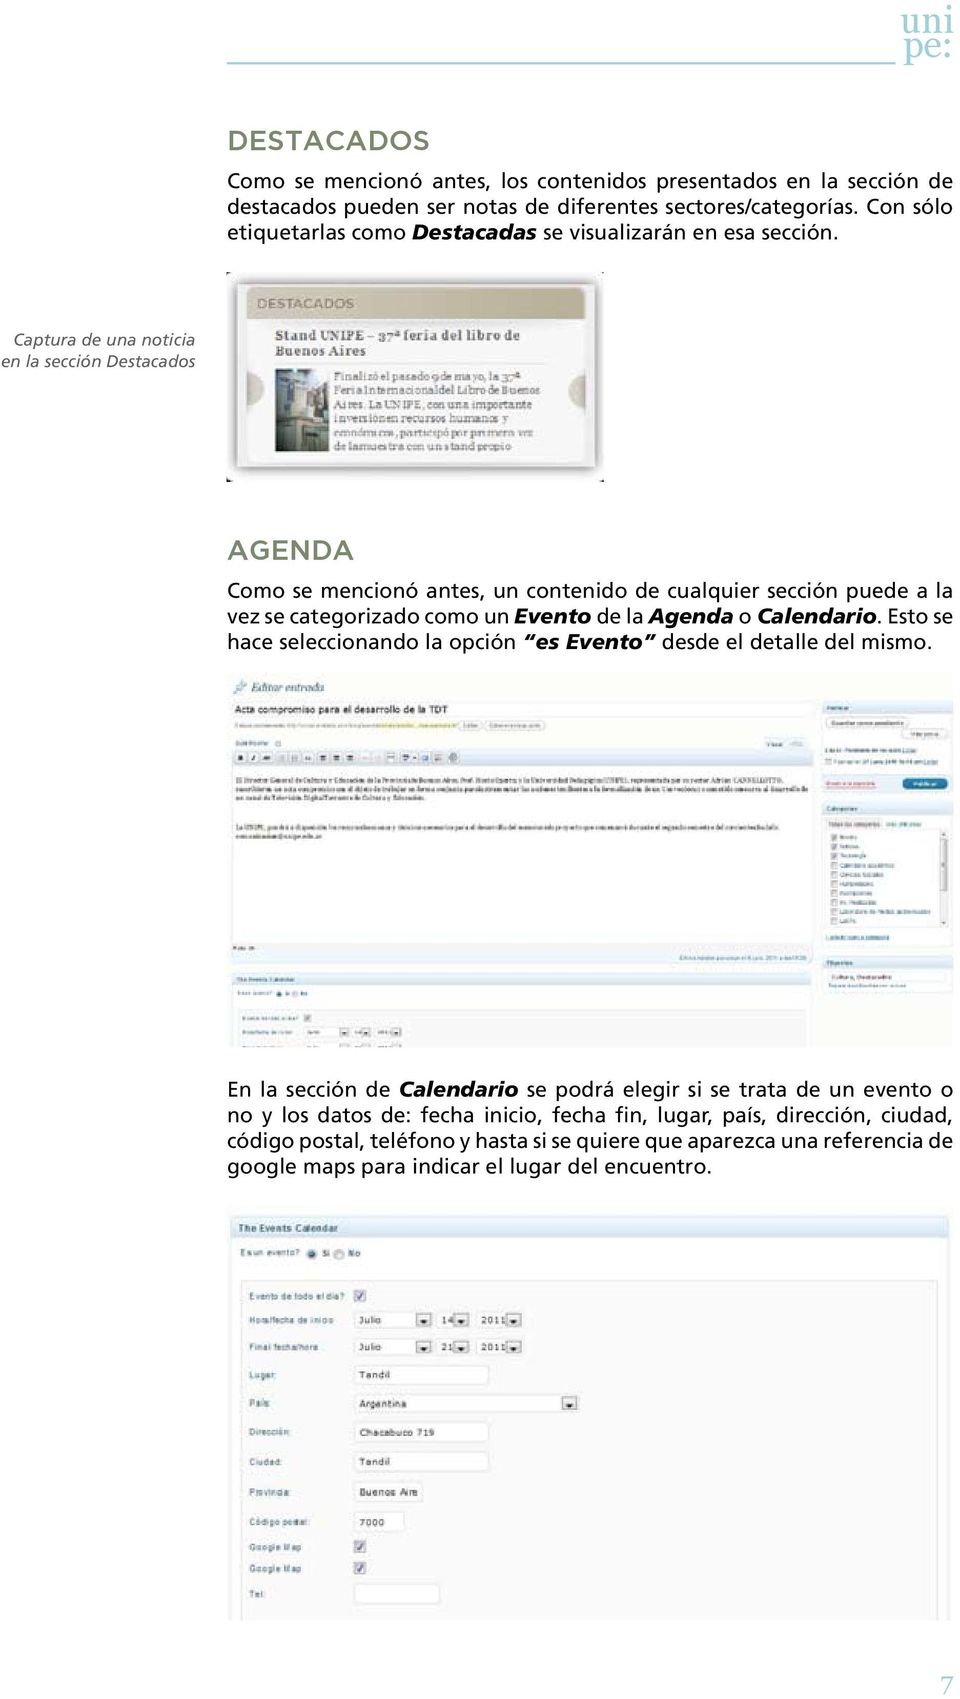 Captura de una noticia en la sección Destacados Agenda Como se mencionó antes, un contenido de cualquier sección puede a la vez se categorizado como un Evento de la Agenda o Calendario.